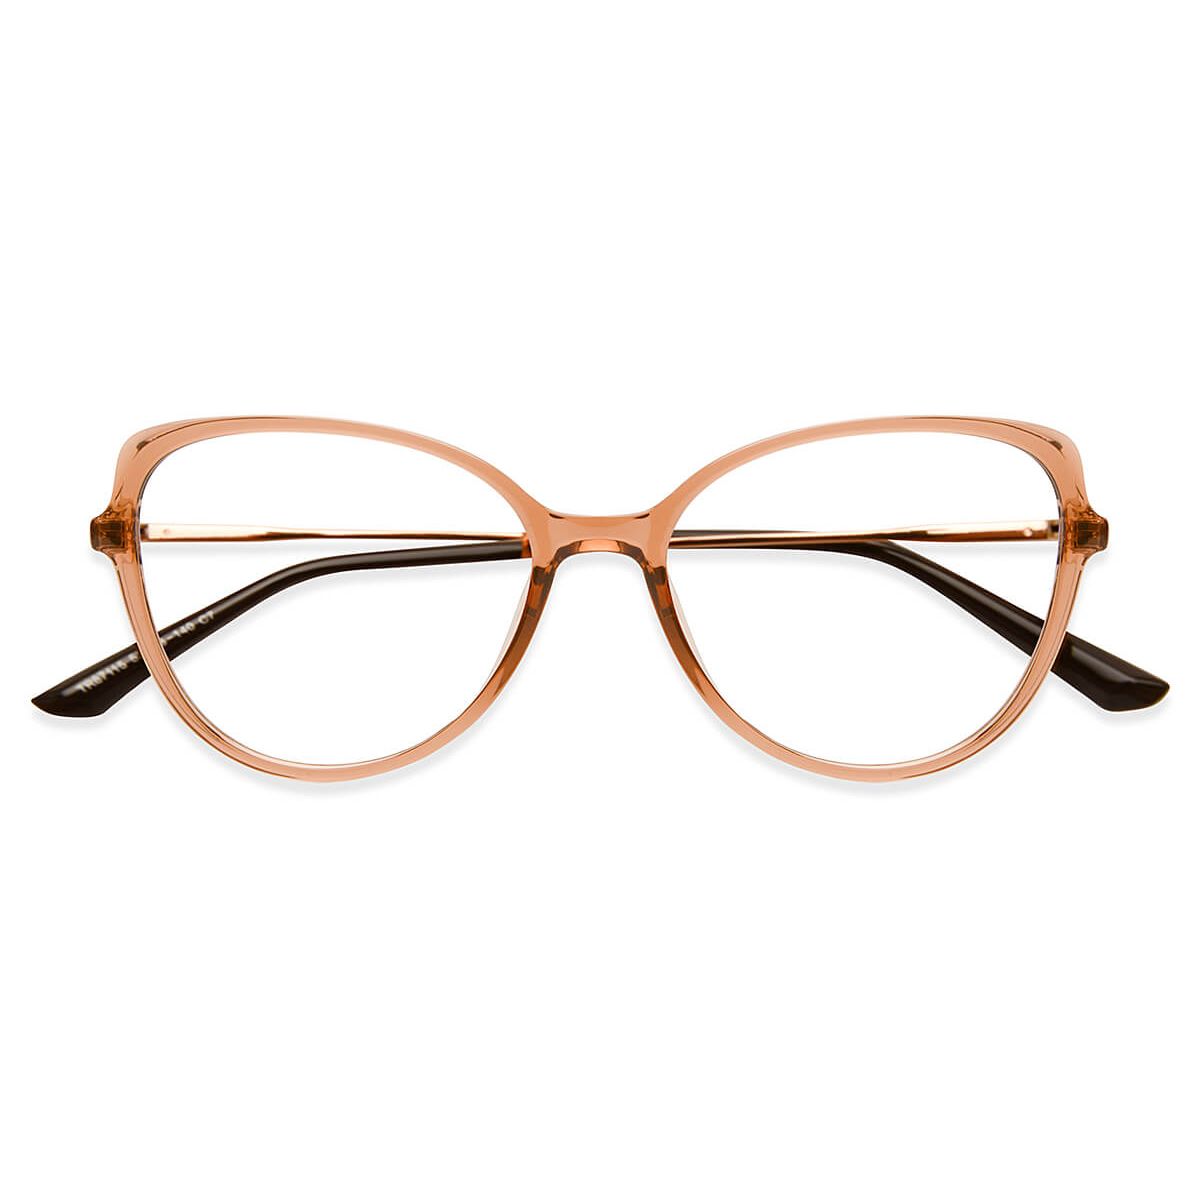 87115 Cat-eye Brown Eyeglasses Frames | Leoptique